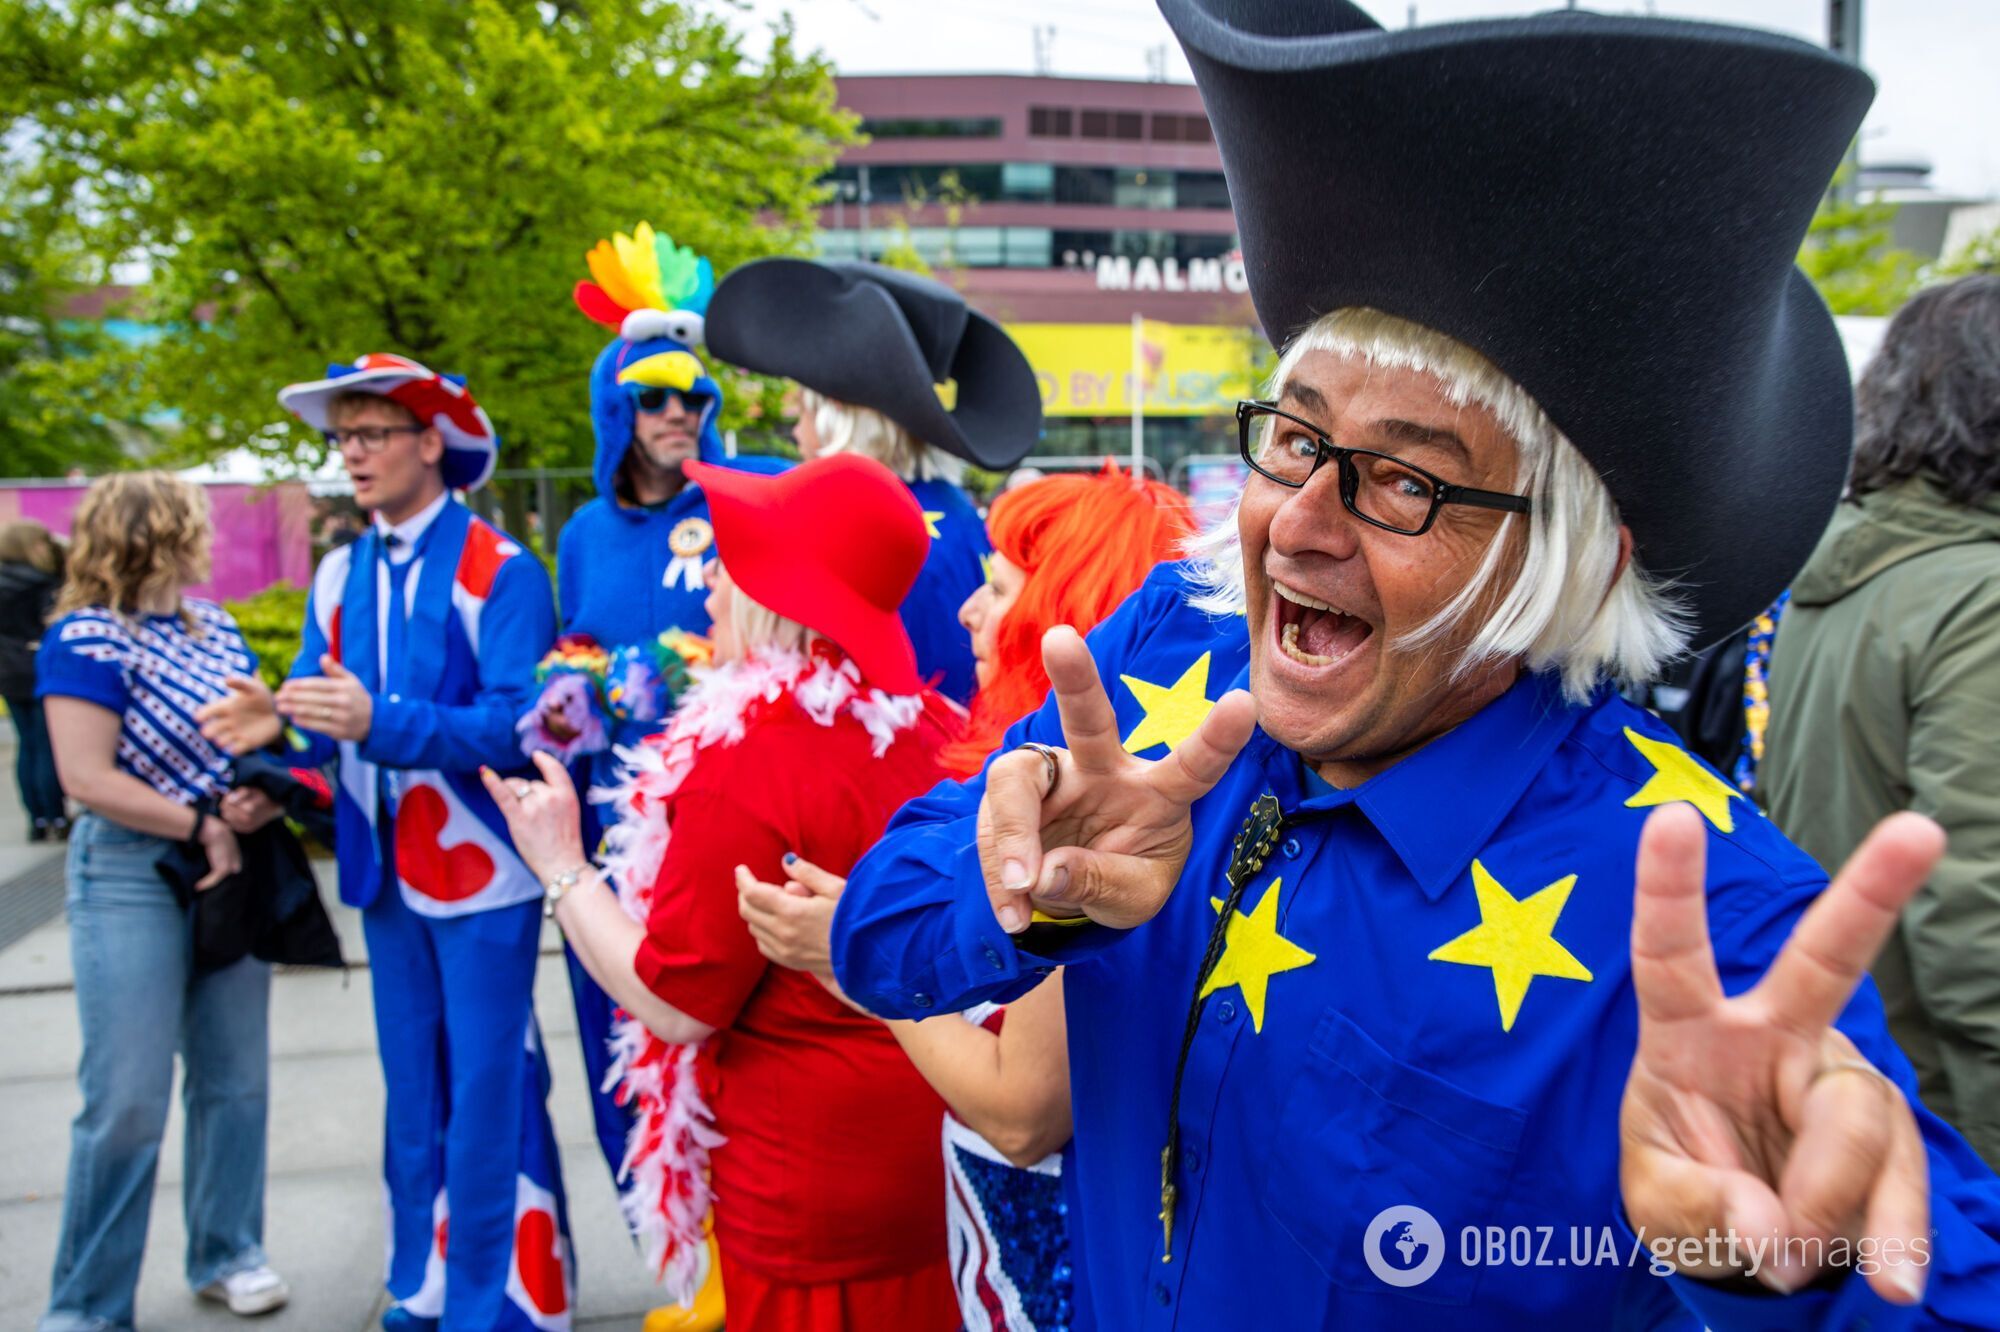 Joost Klein из Нидерландов хитом Europapa довел фанатов Евровидения 2024 года до безумия: публика не могла сдержать эмоций. Видео